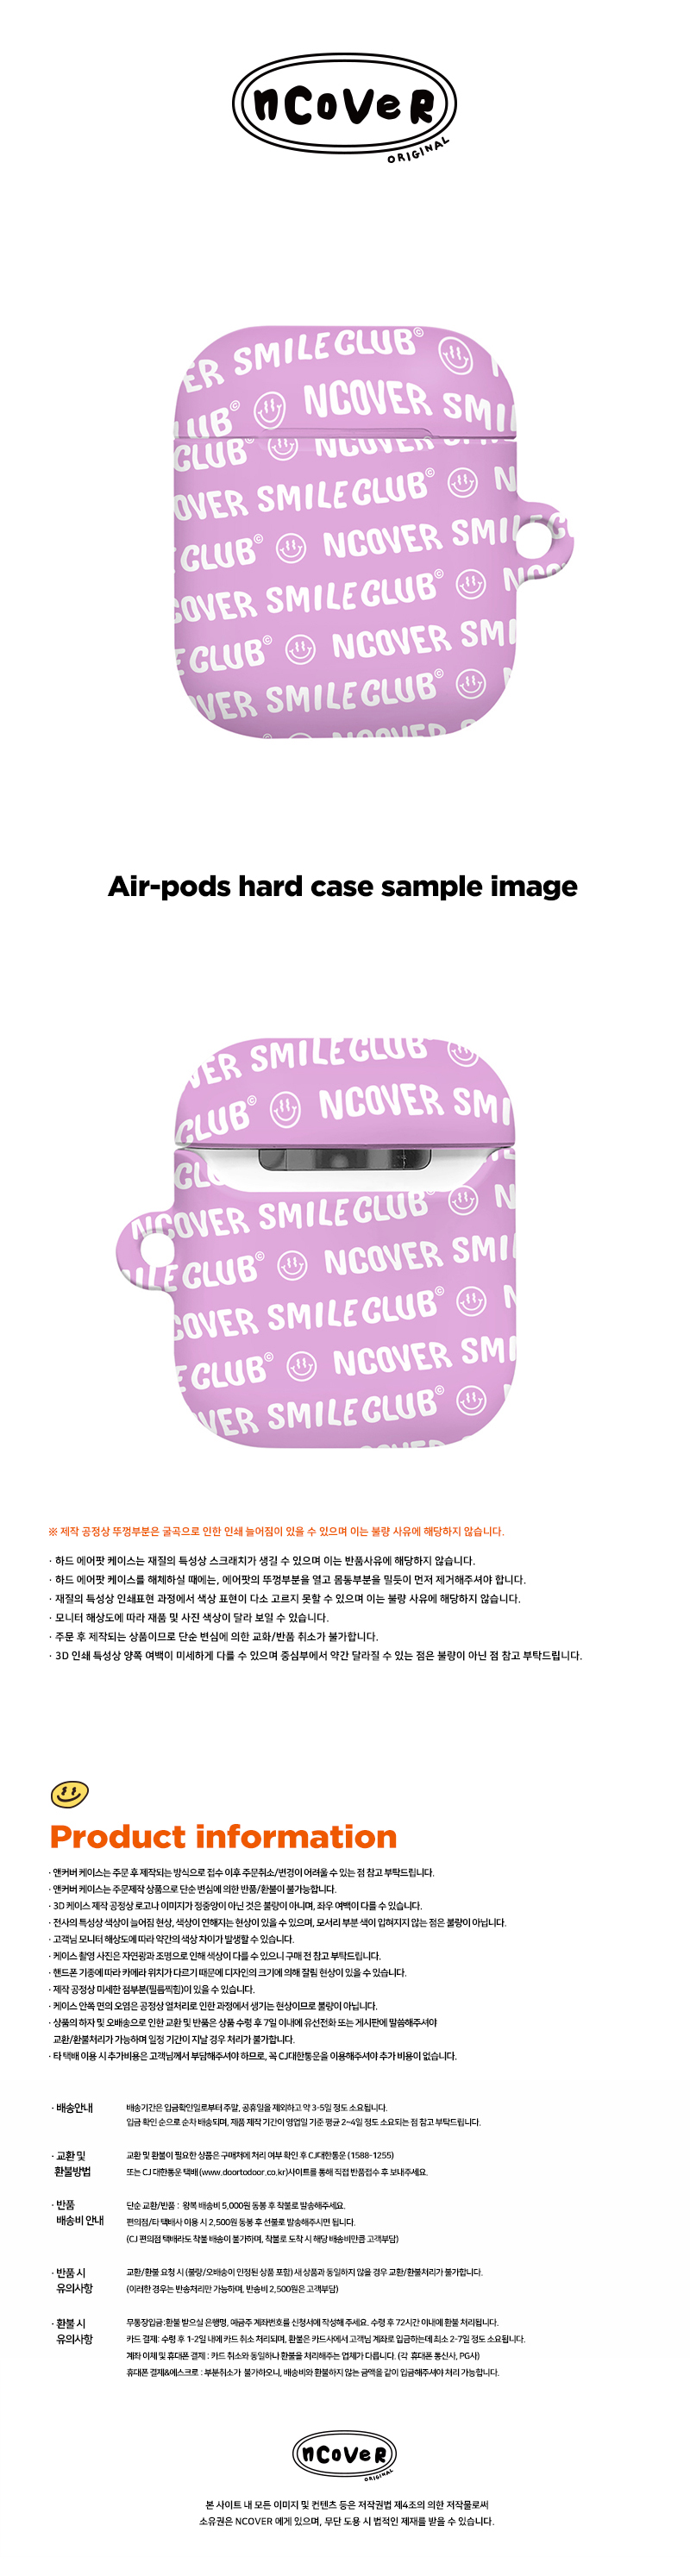 [호환용] Smile club(emoticon)-purple(airpods hard)  18,000원 - 바이인터내셔널주식회사 디지털, 이어폰/헤드폰, 이어폰/헤드폰 액세서리, 에어팟/에어팟프로 케이스 바보사랑 [호환용] Smile club(emoticon)-purple(airpods hard)  18,000원 - 바이인터내셔널주식회사 디지털, 이어폰/헤드폰, 이어폰/헤드폰 액세서리, 에어팟/에어팟프로 케이스 바보사랑